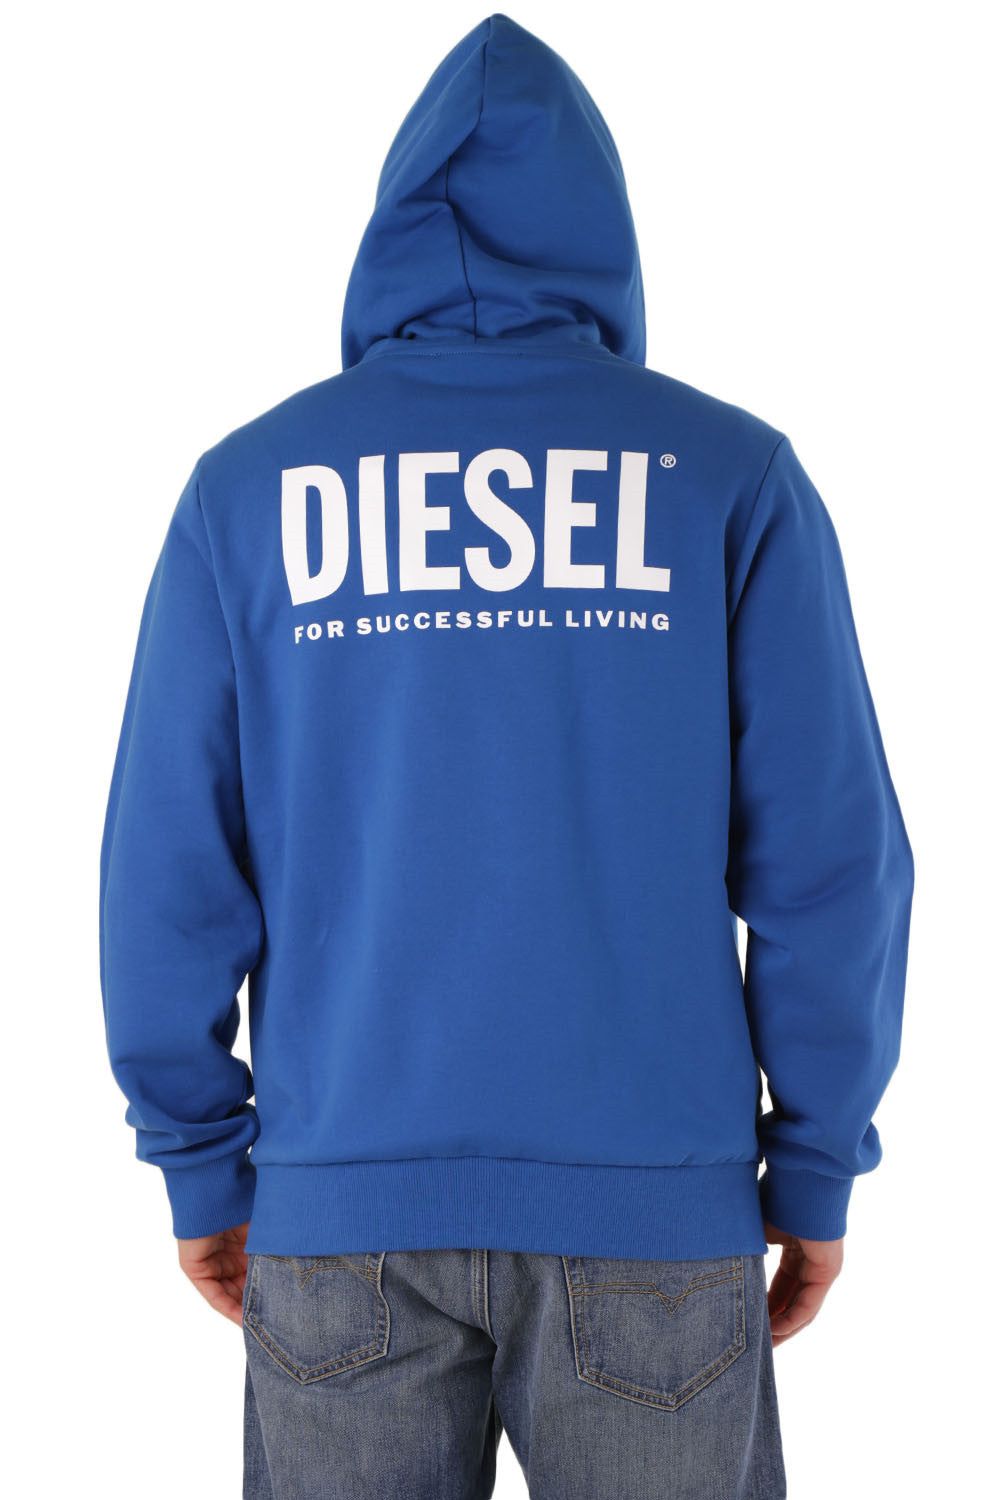 Brand: Diesel   Gender: Men   Type: Sweatshirts   Color: Blue   Pattern: Print   Sleeves: Long Sleeve   Collar: Hood   Fastening: With Zip   Season: All Seasons